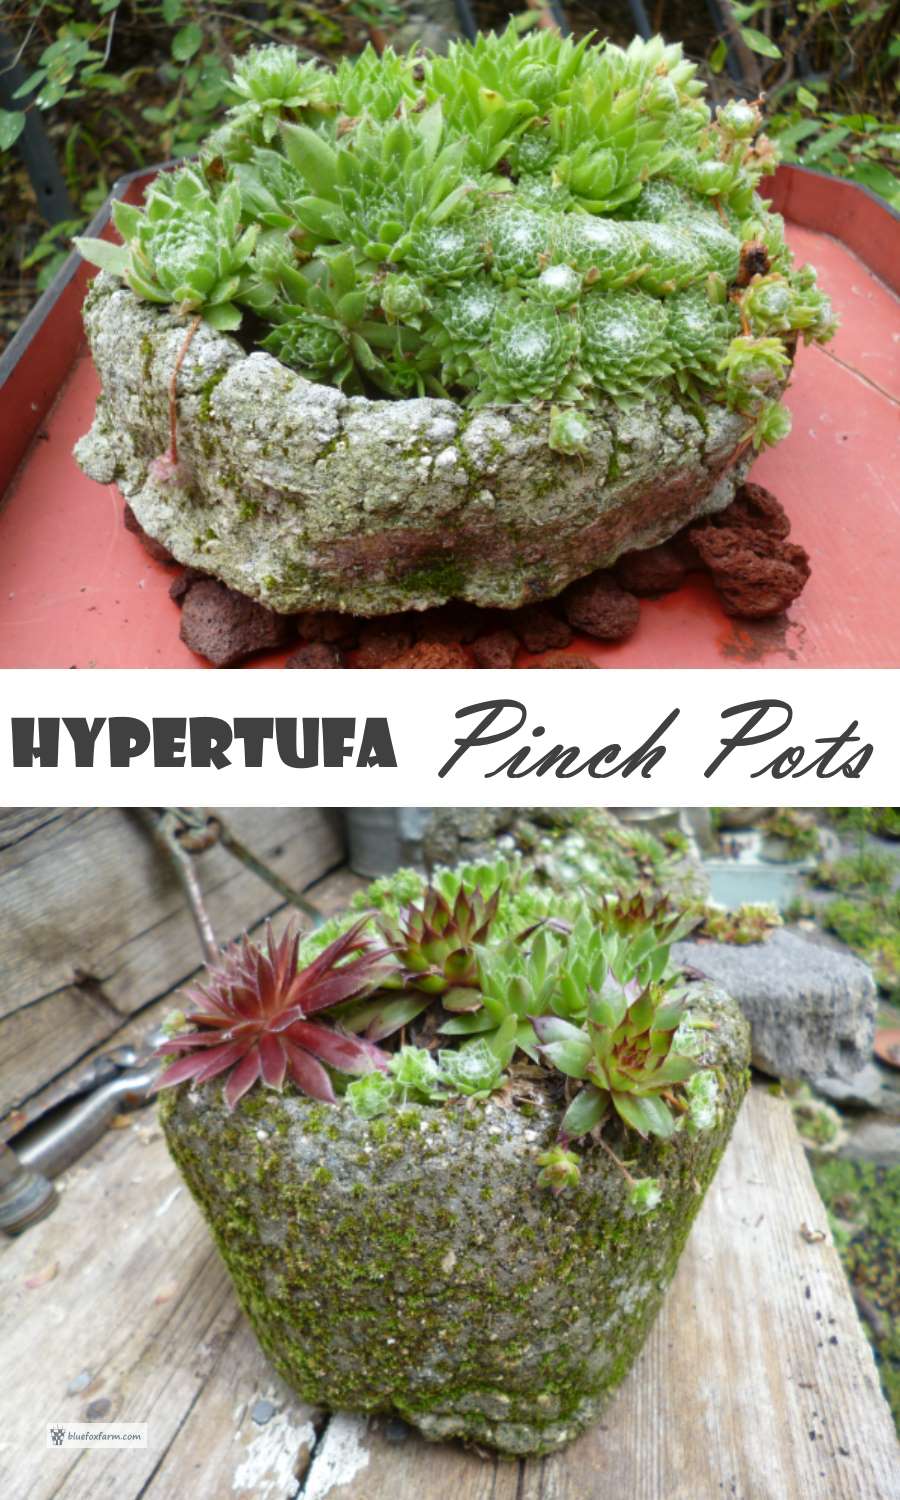 Hypertufa Pinch Pots